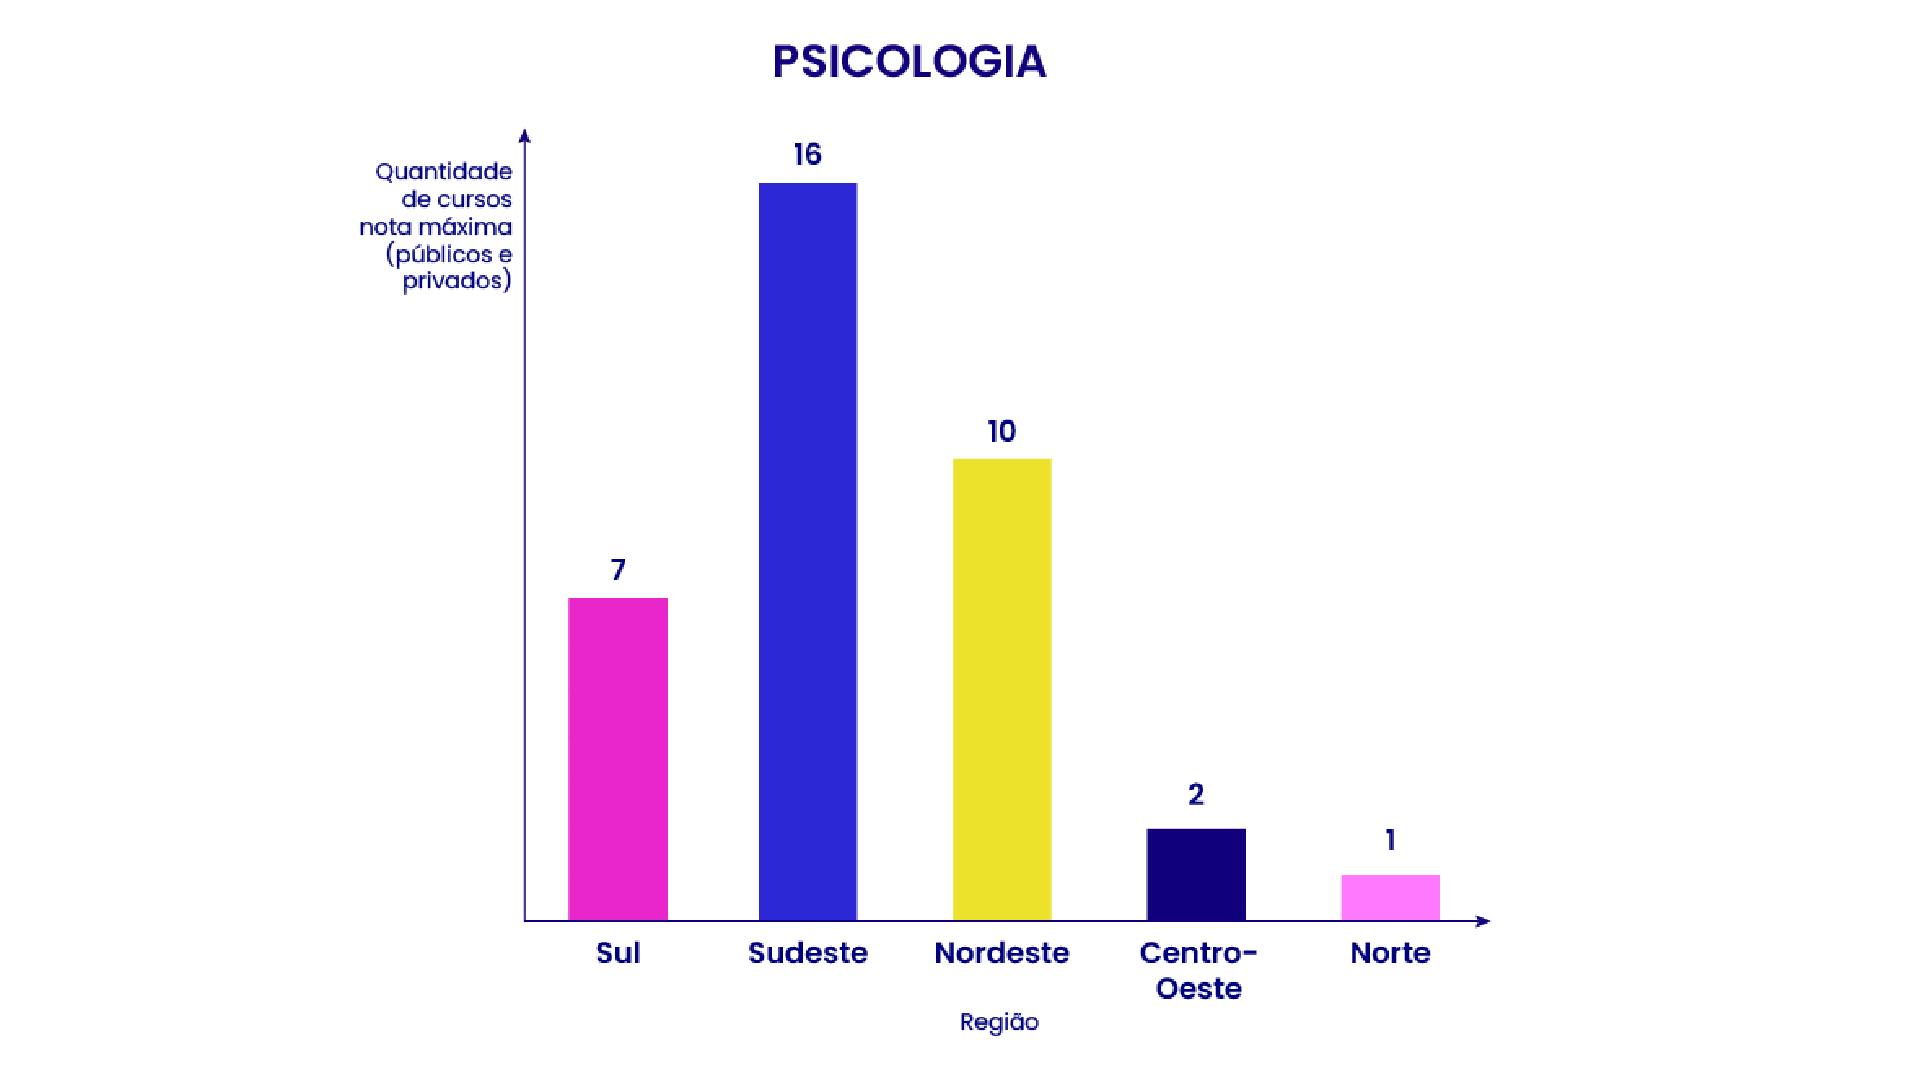 Gráfico de barras indicando a quantidade de cursos de Psicologia com nota máxima por região do Brasil: 16 no Sudeste, 10 no Nordeste, 7 no Sul, 2 no Centro-Oeste e 1 no Norte